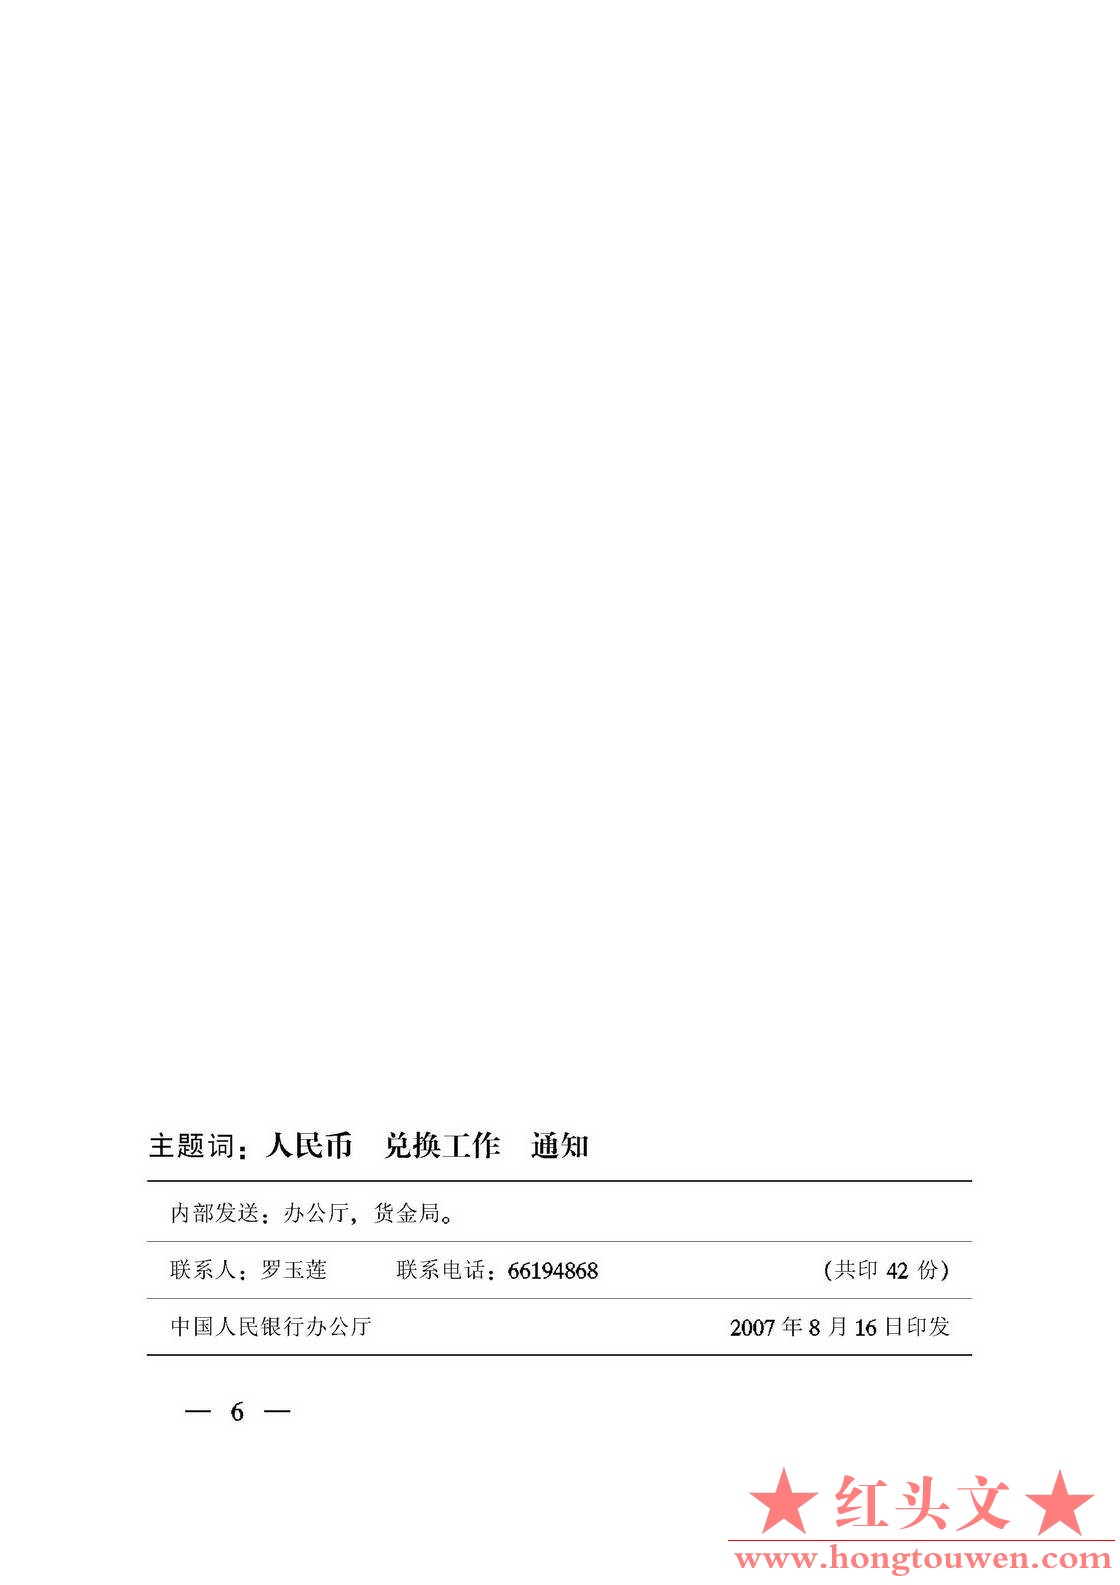 银发[2007]280号-中国人民银行关于做好特殊残缺污损人民币兑换工作有关事项的通知_页.jpg